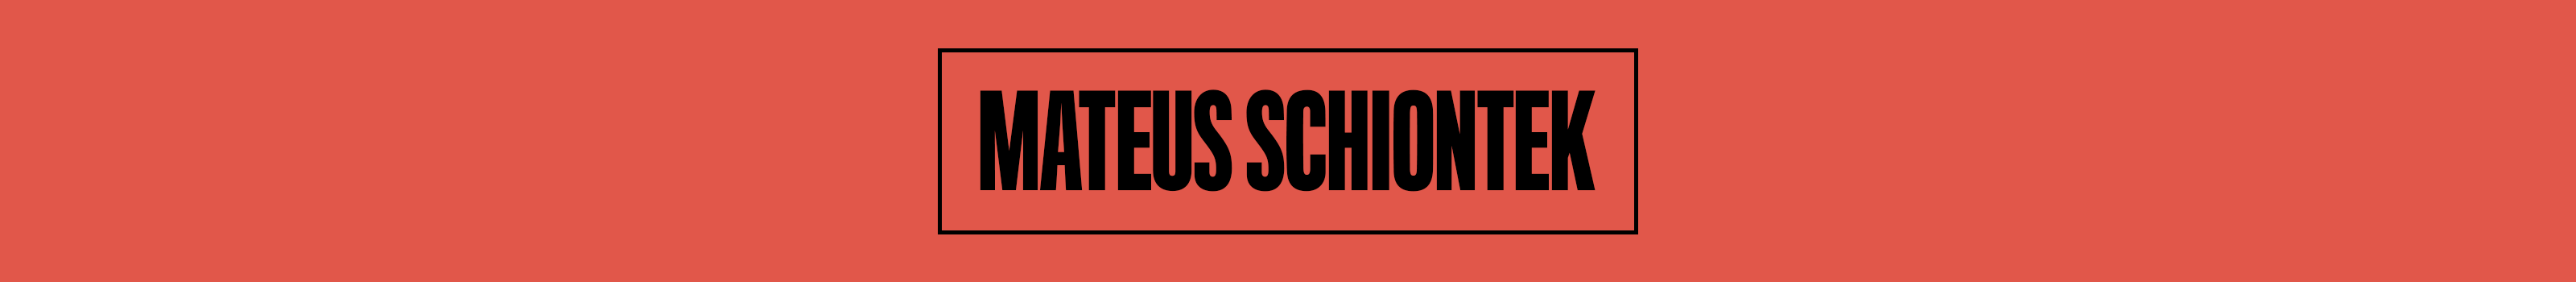 Mateus Schiontek's profile banner